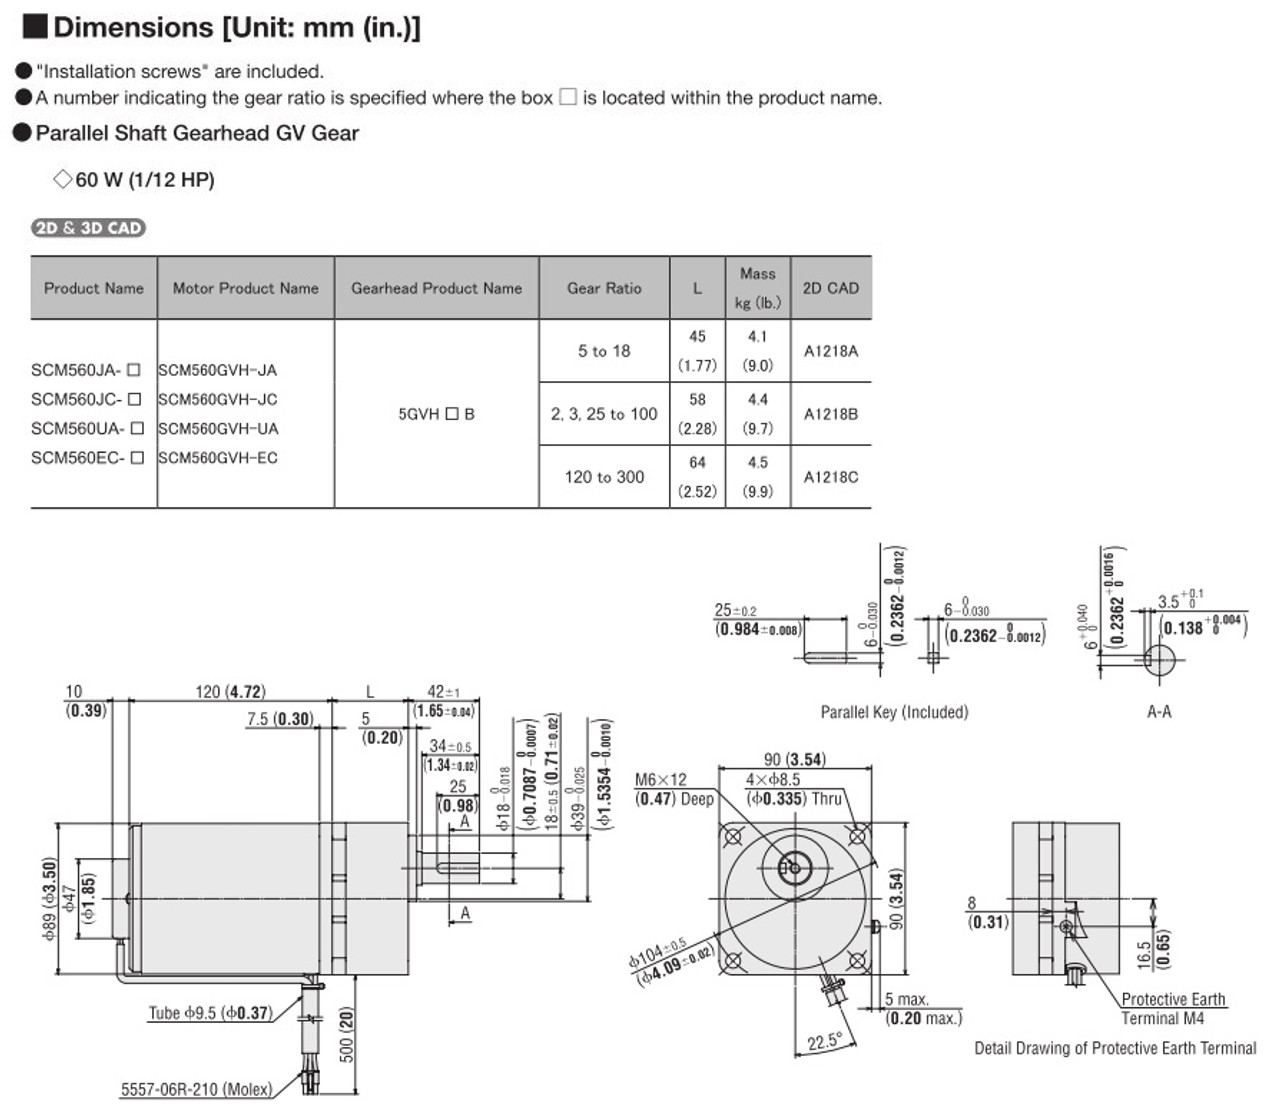 SCM560EC-6 - Dimensions